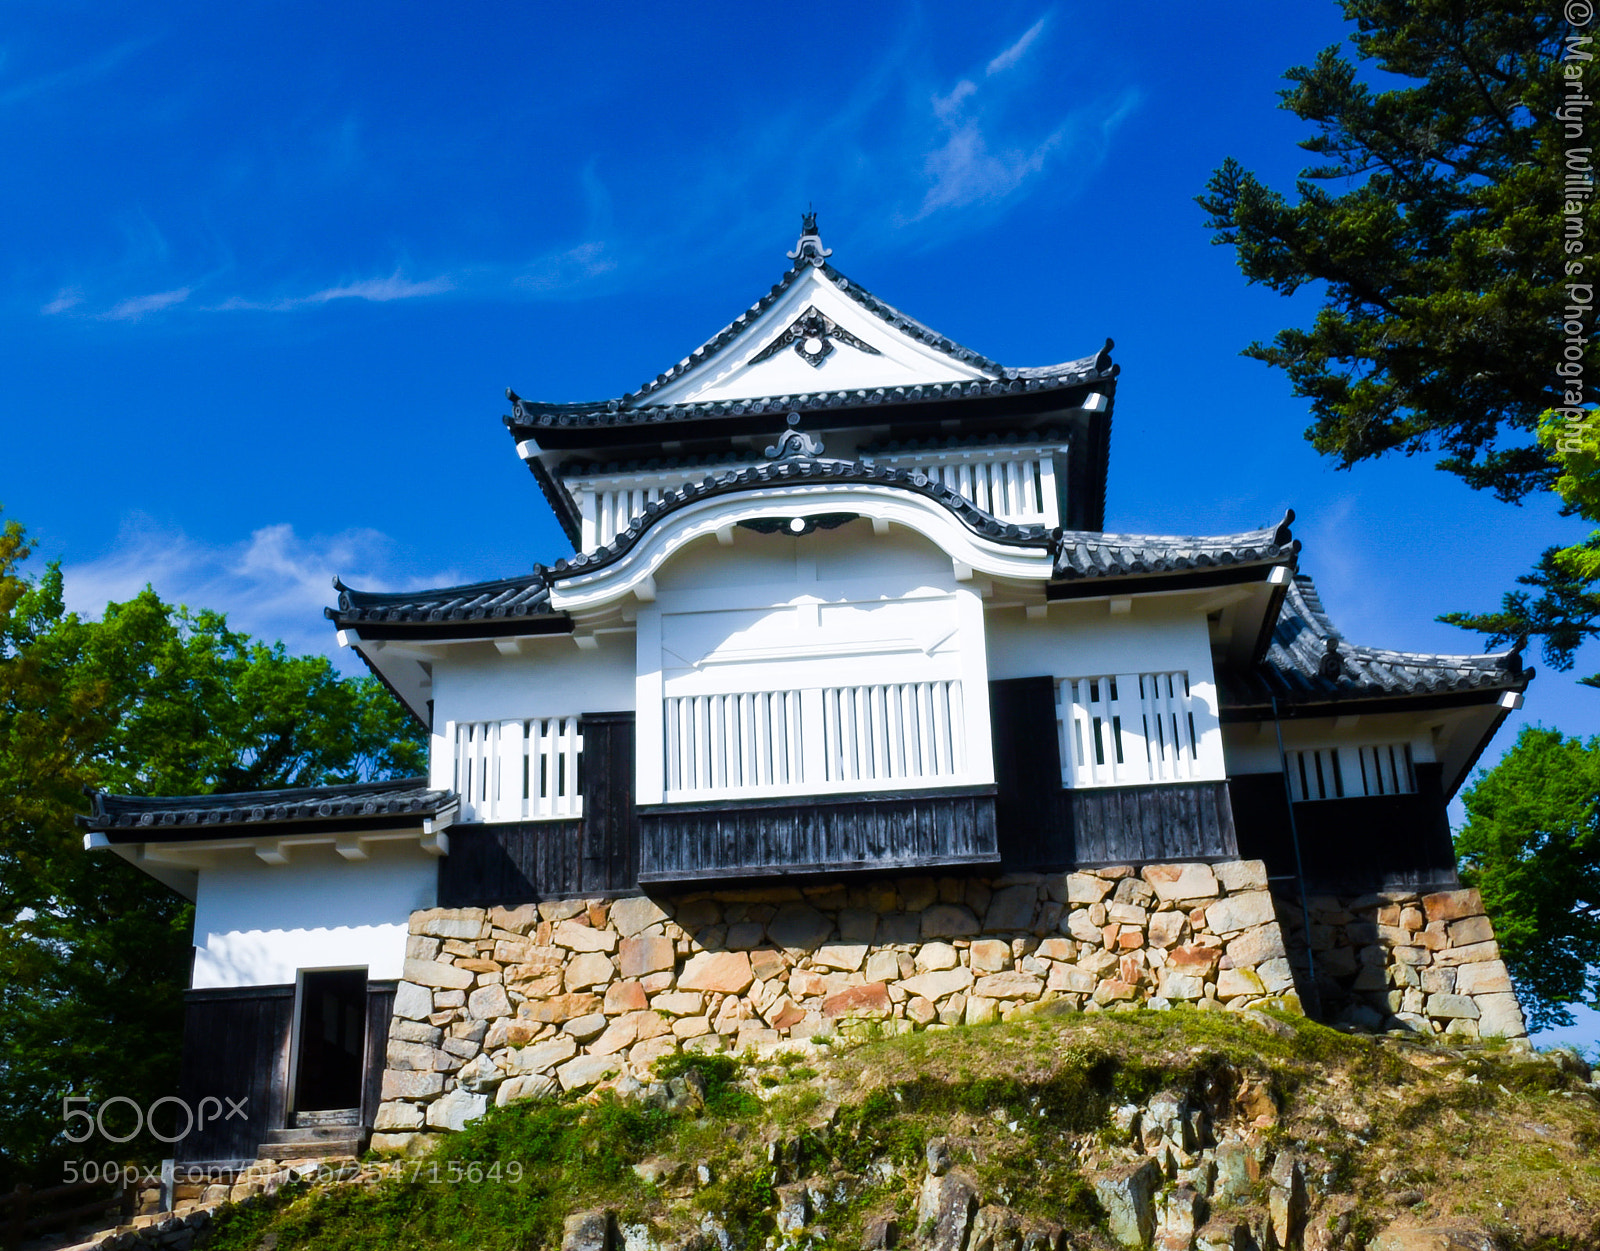 Nikon D750 sample photo. Bitchu matsuyama castle photography